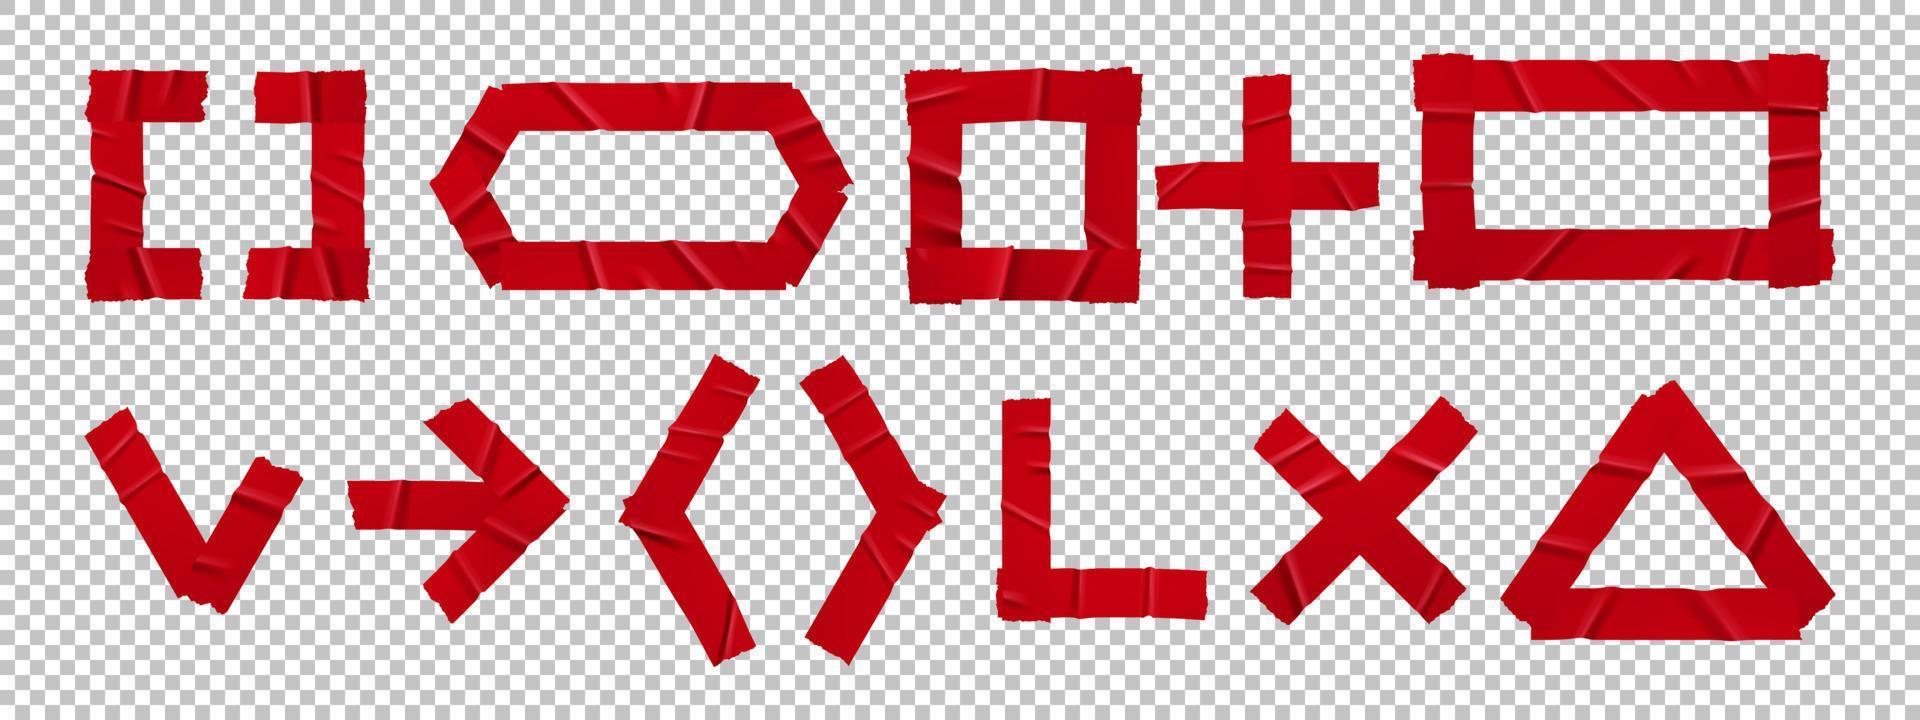 rot geklebte klebebandflecken zeichen und symbole gesetzt vektor